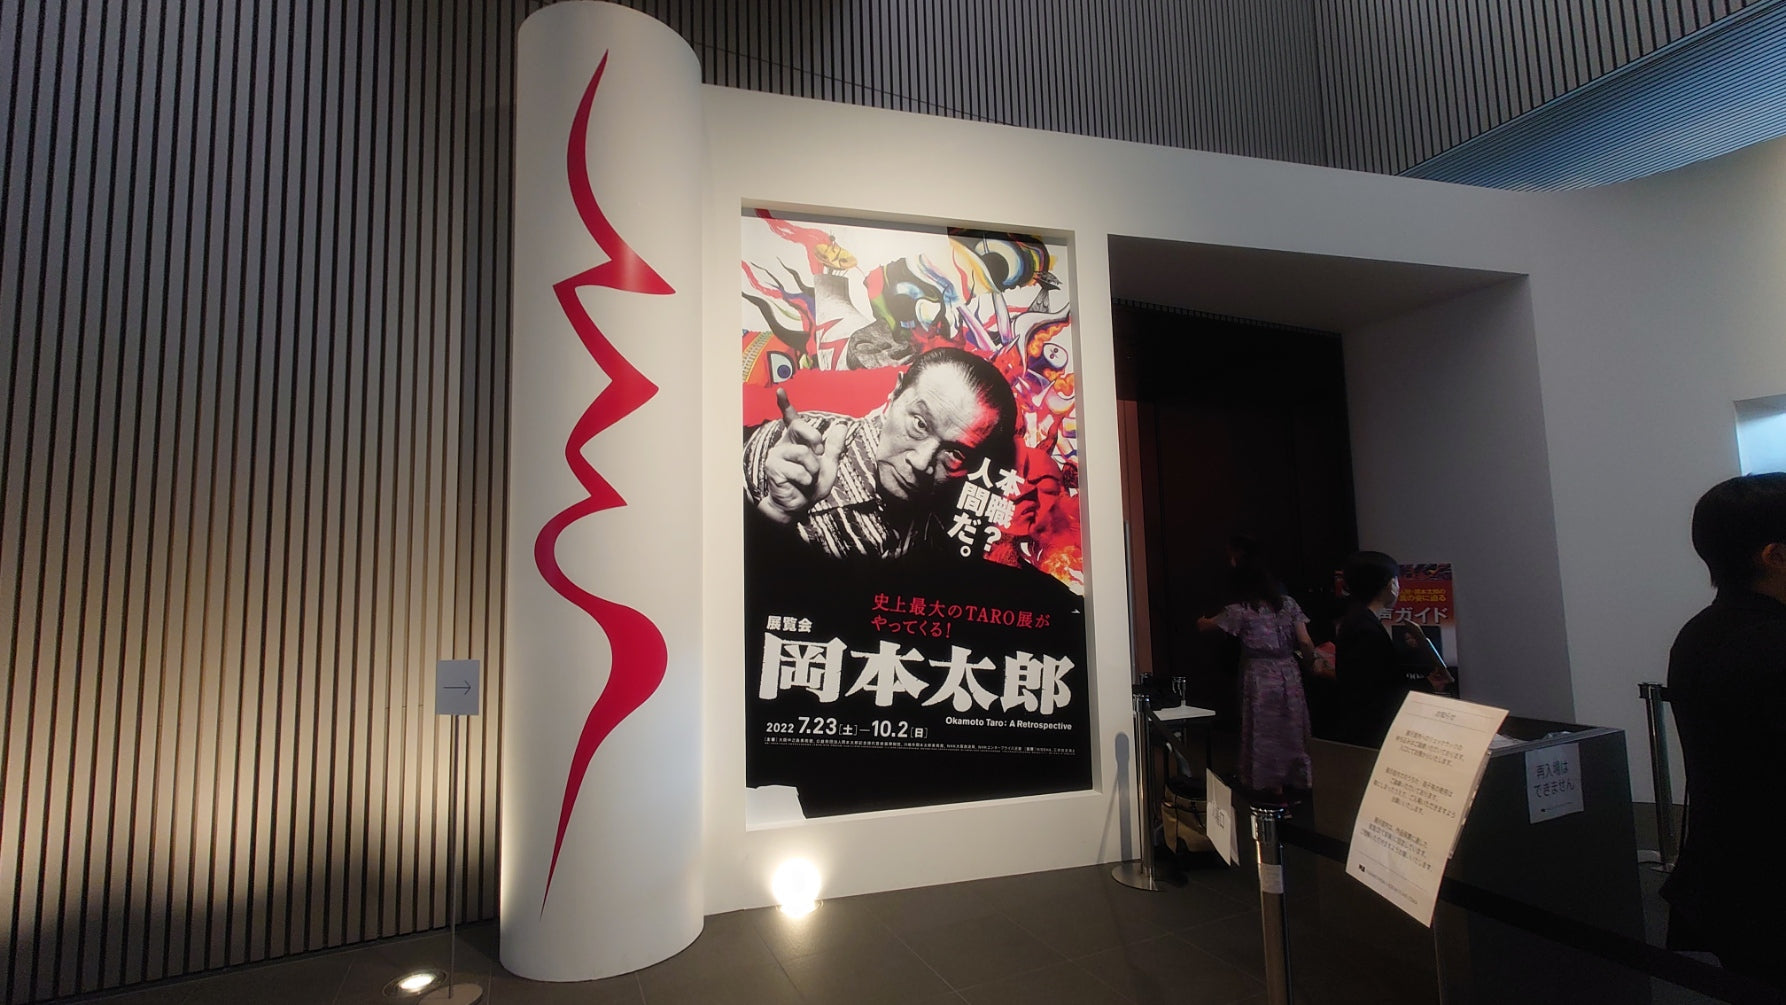 大阪中之島美術館「展覧会 岡本太郎」レポート。破天荒で王道な生き様に触れる。 